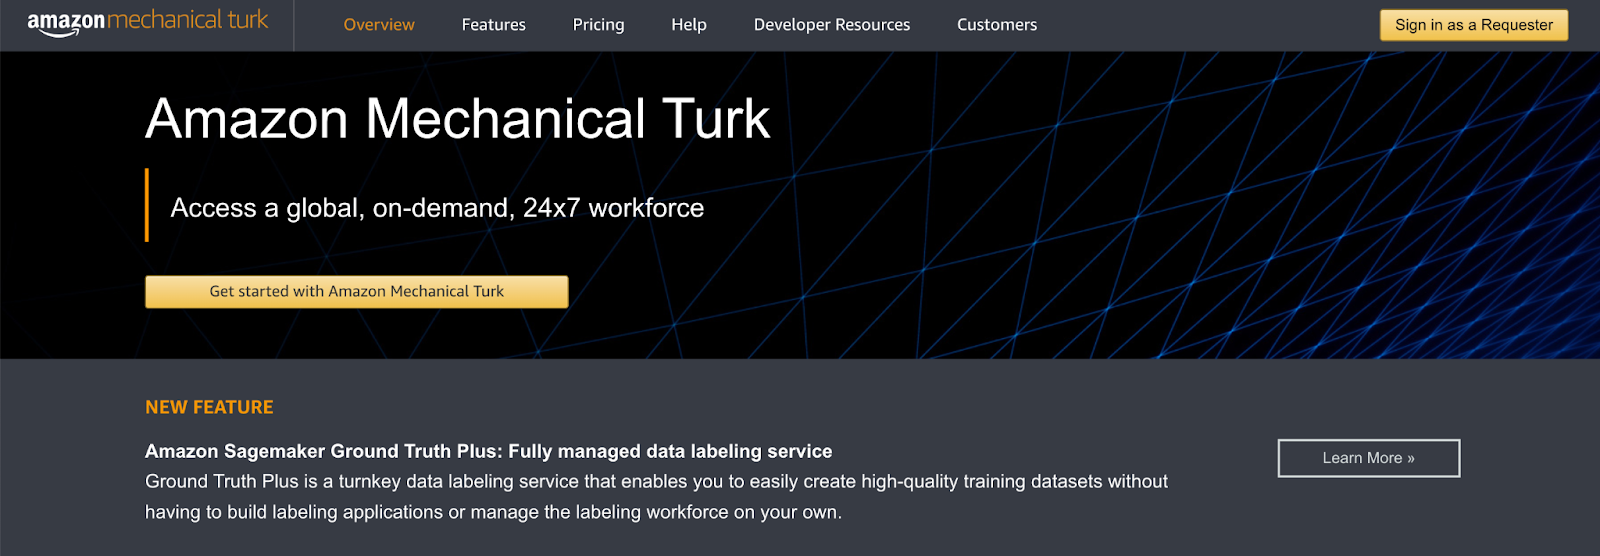 amazon mechanical turk homepage